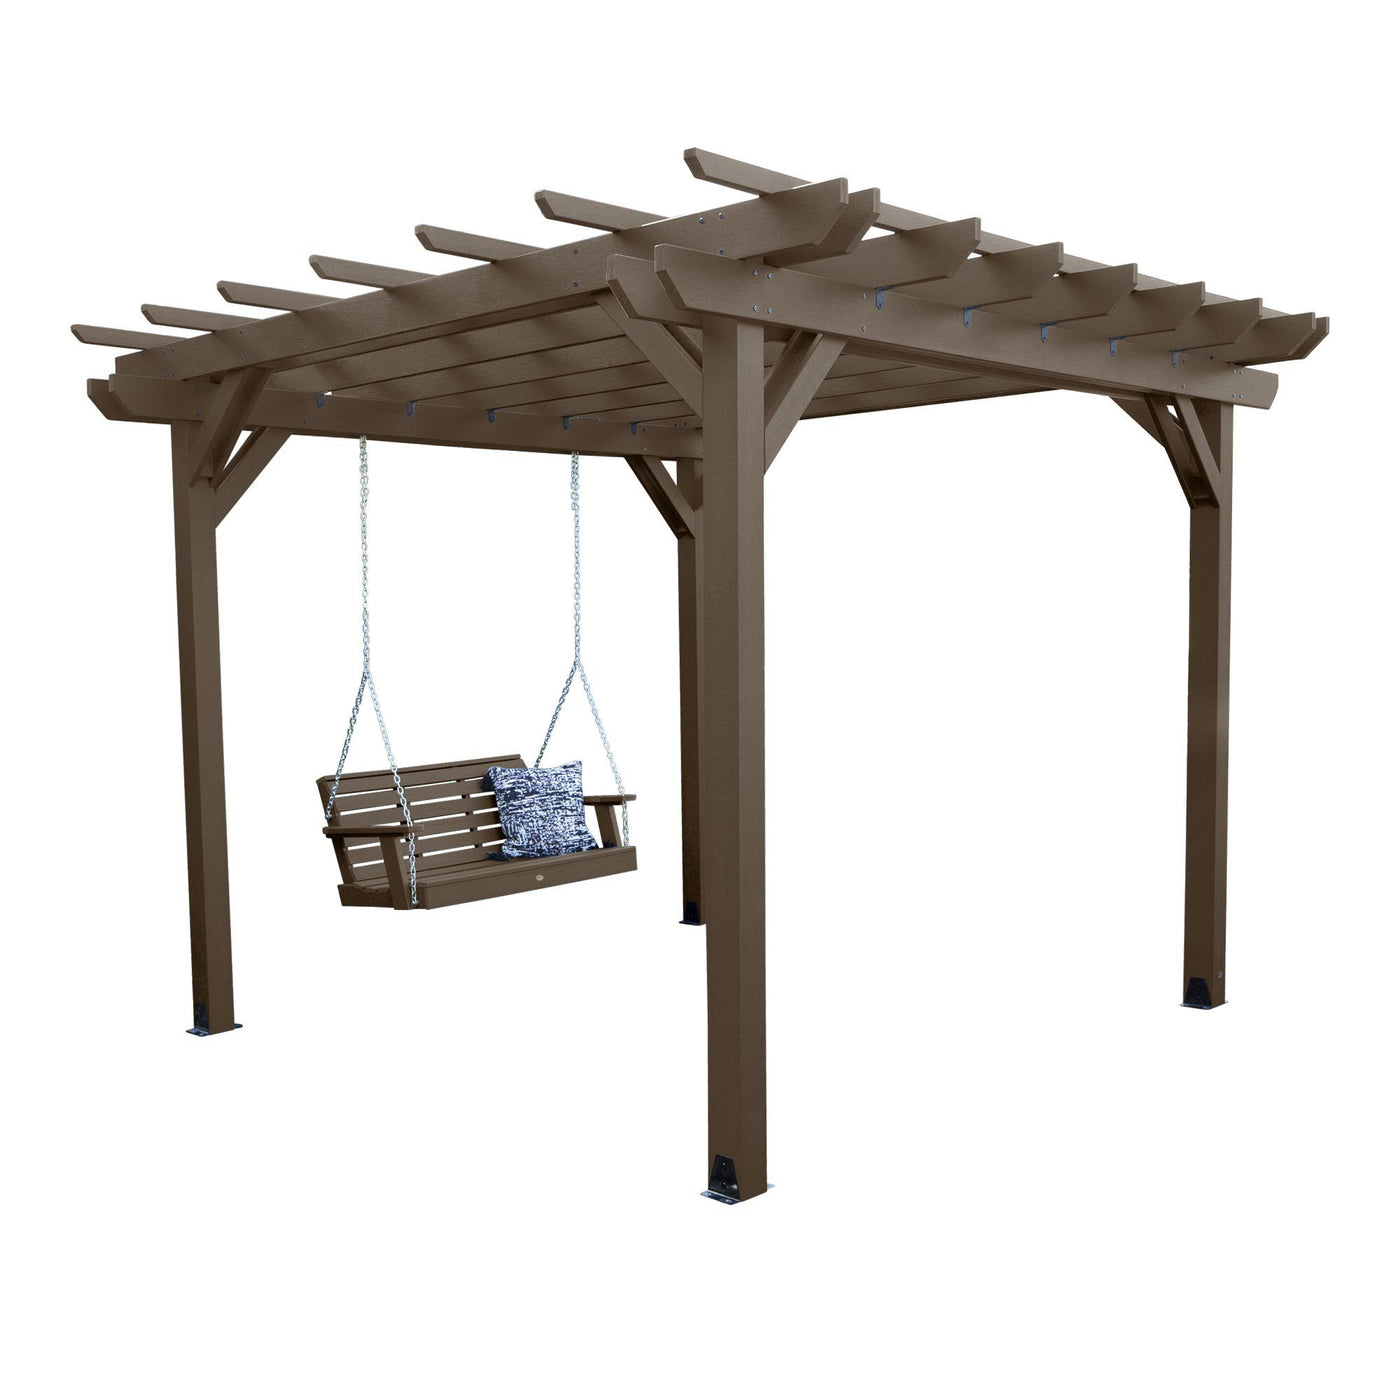 Bodhi 10’ x 12’ DIY Pergola with 4’ Weatherly Porch Swing Highwood USA Weathered Acorn 